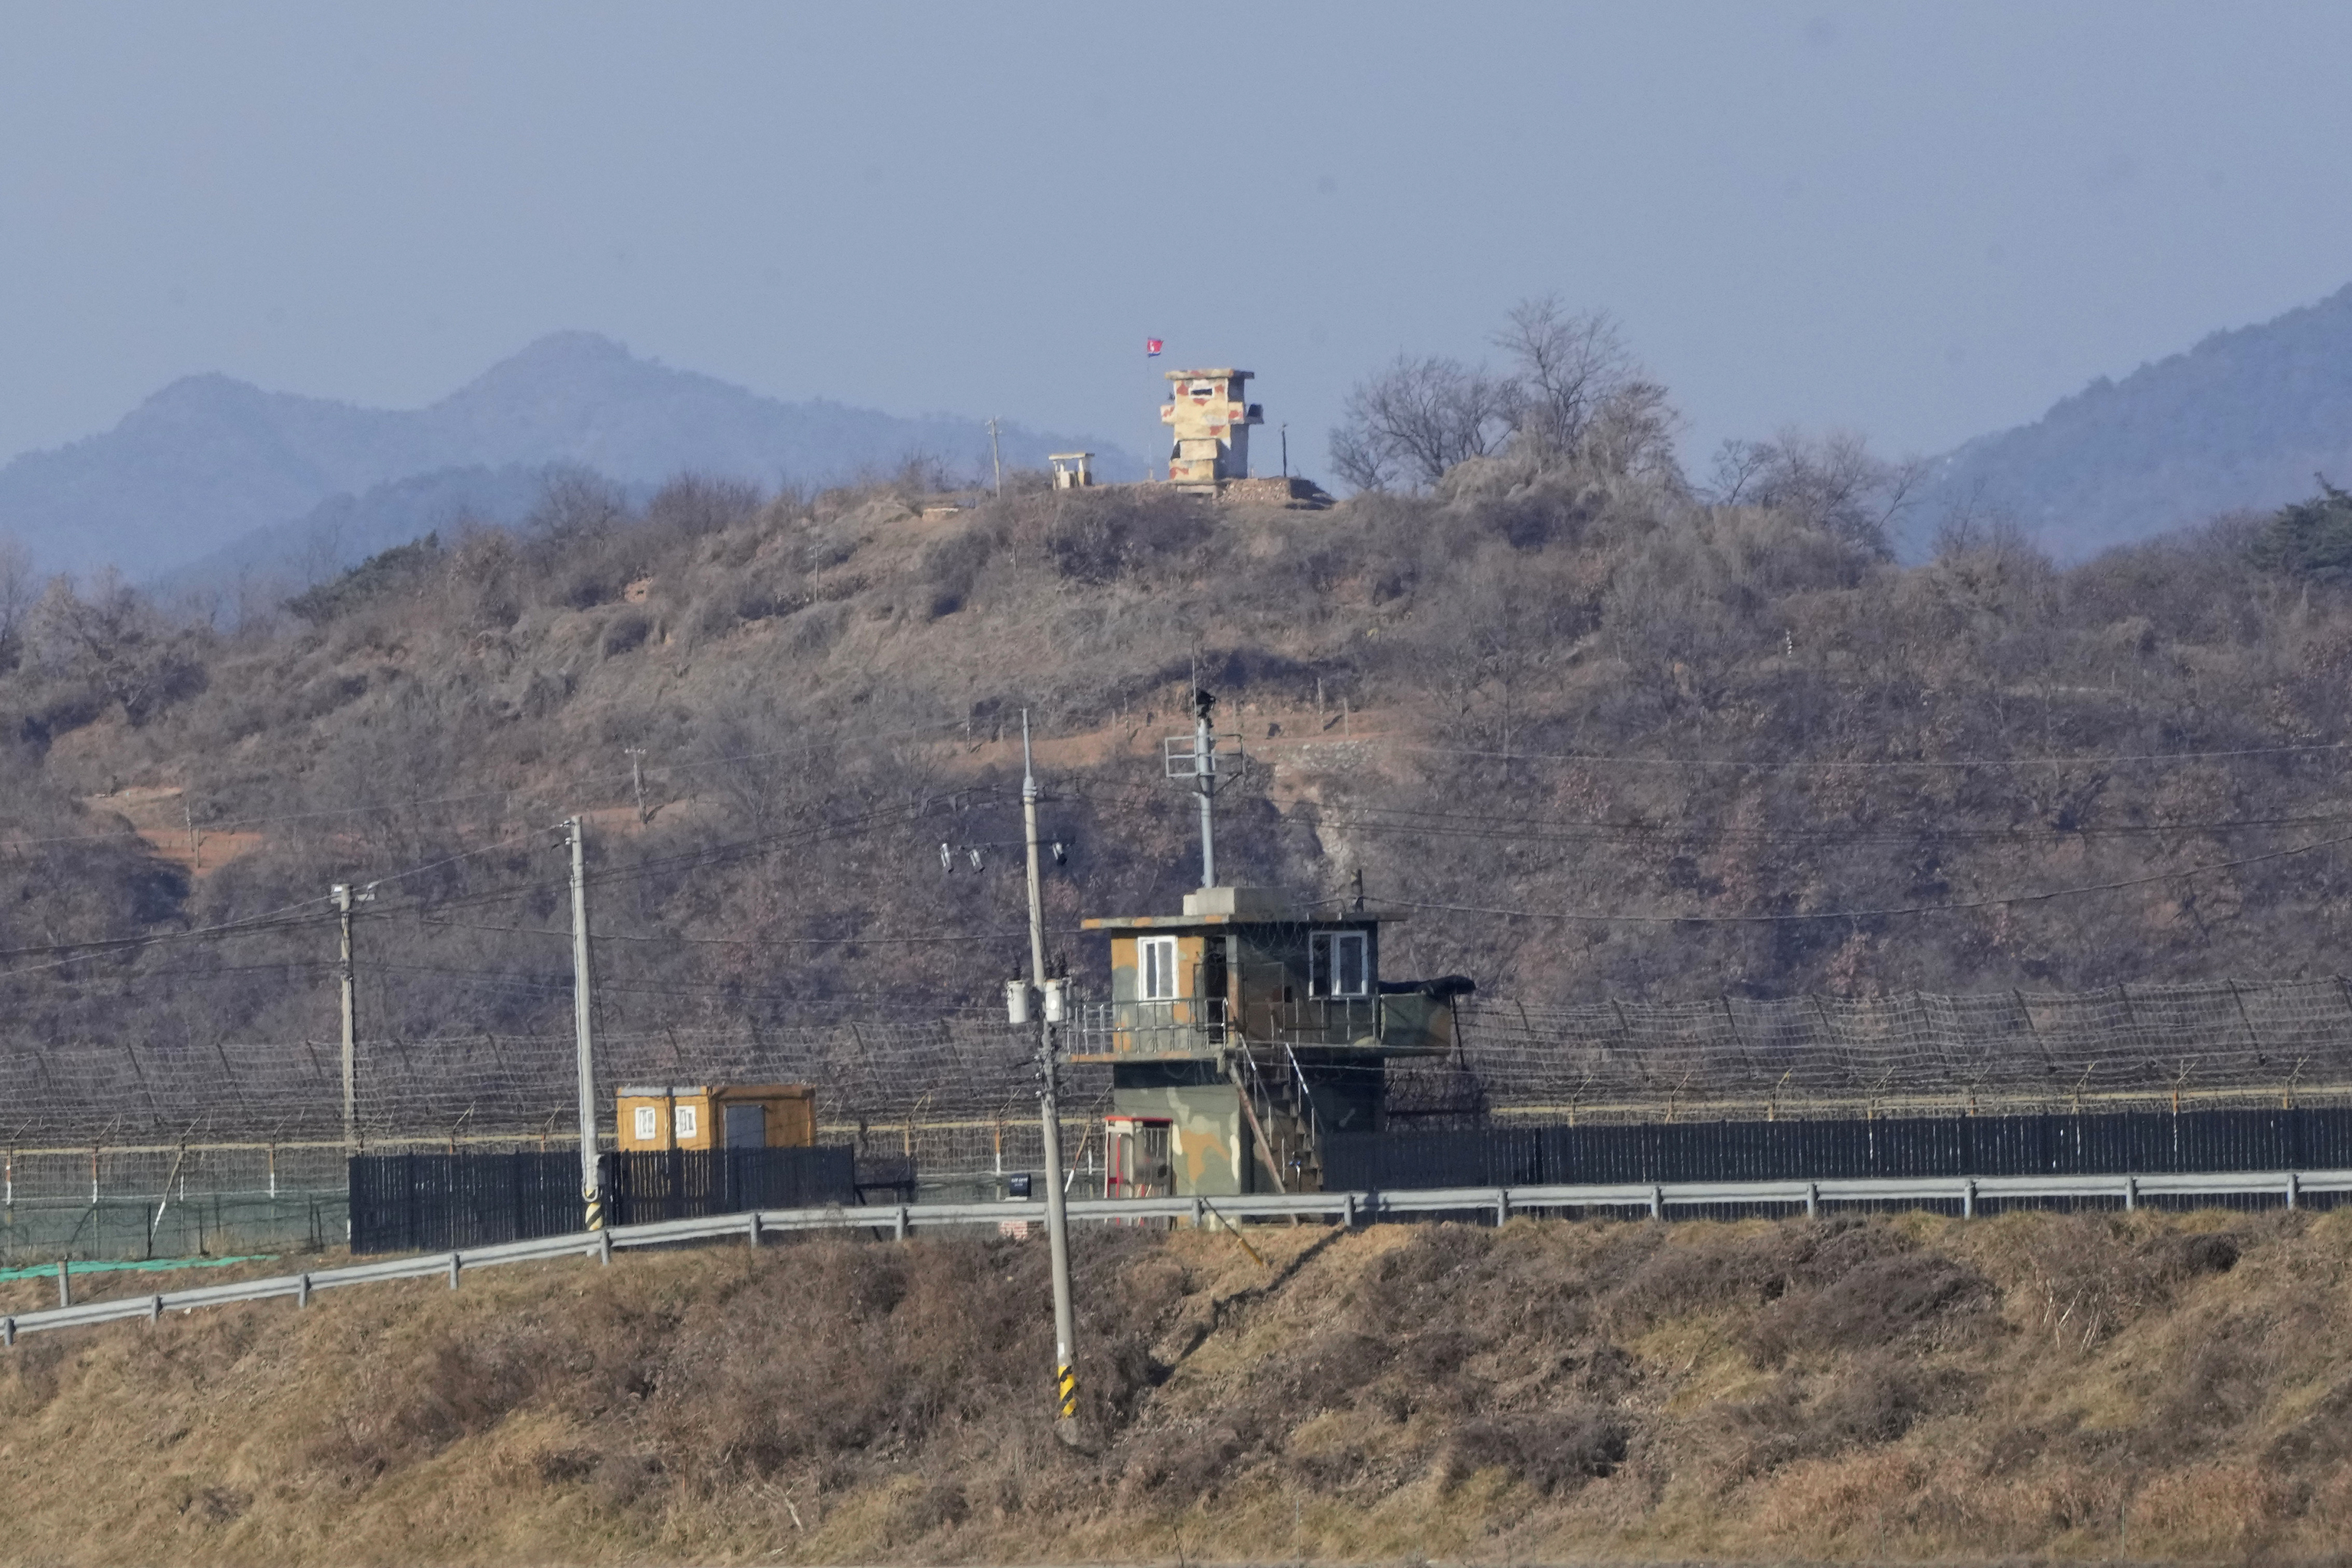 Puestos de guardia militar de Corea del Norte, atrs, y Corea del Sur, adelante, se ven en Paju, cerca de la frontera con Corea del Norte, Corea del Sur, domingo, 2 de enero de 2022. El ejrcito de Corea del Sur dijo el domingo que una persona no identificada cruz la frontera fuertemente fortificada hacia Corea del Norte.